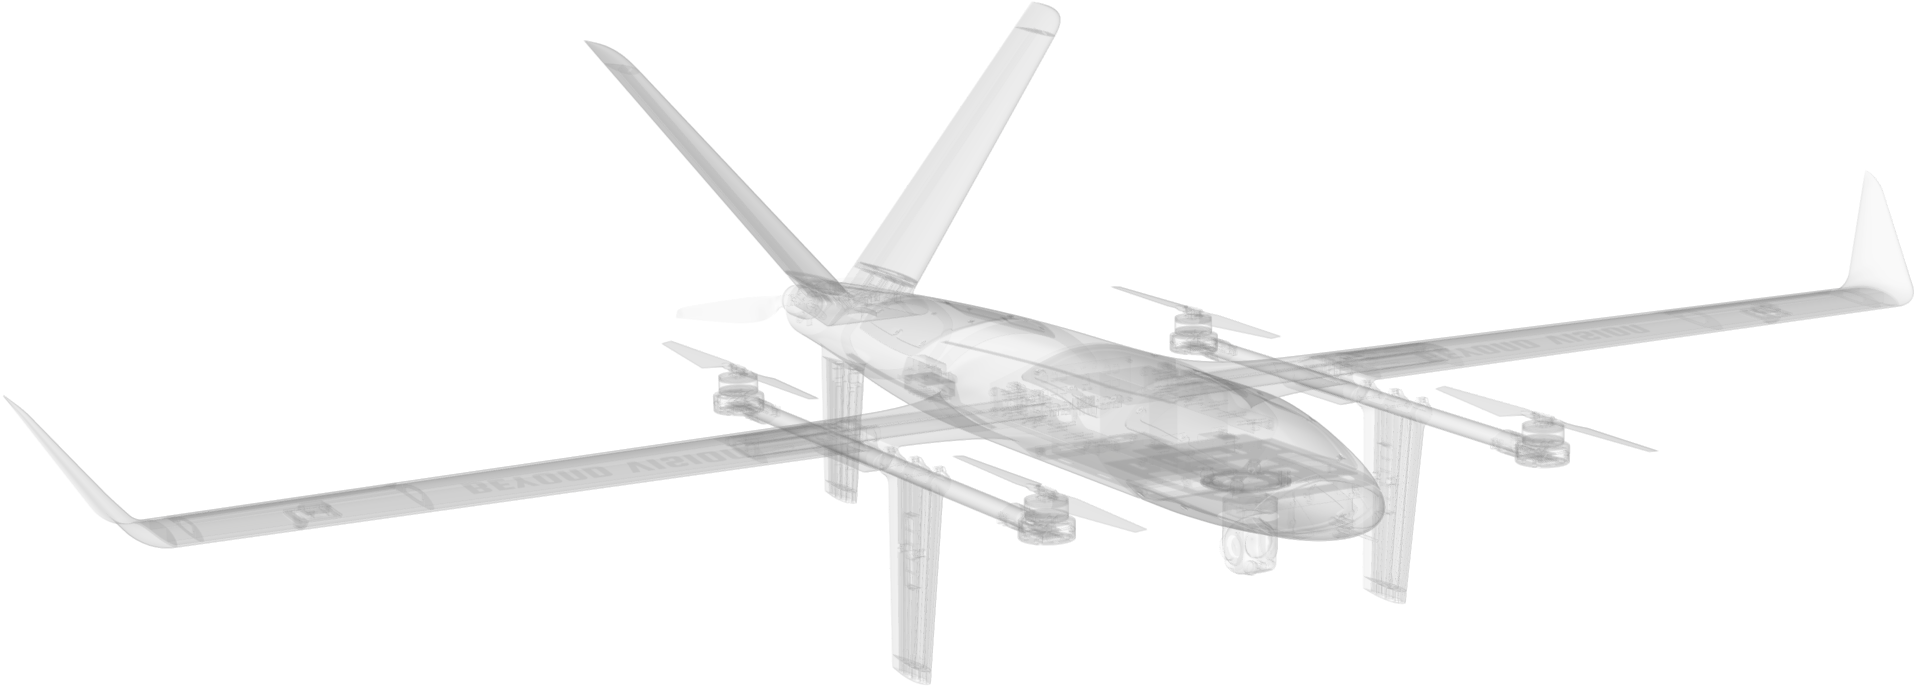 VTOne long range VTOL UAV skeleton